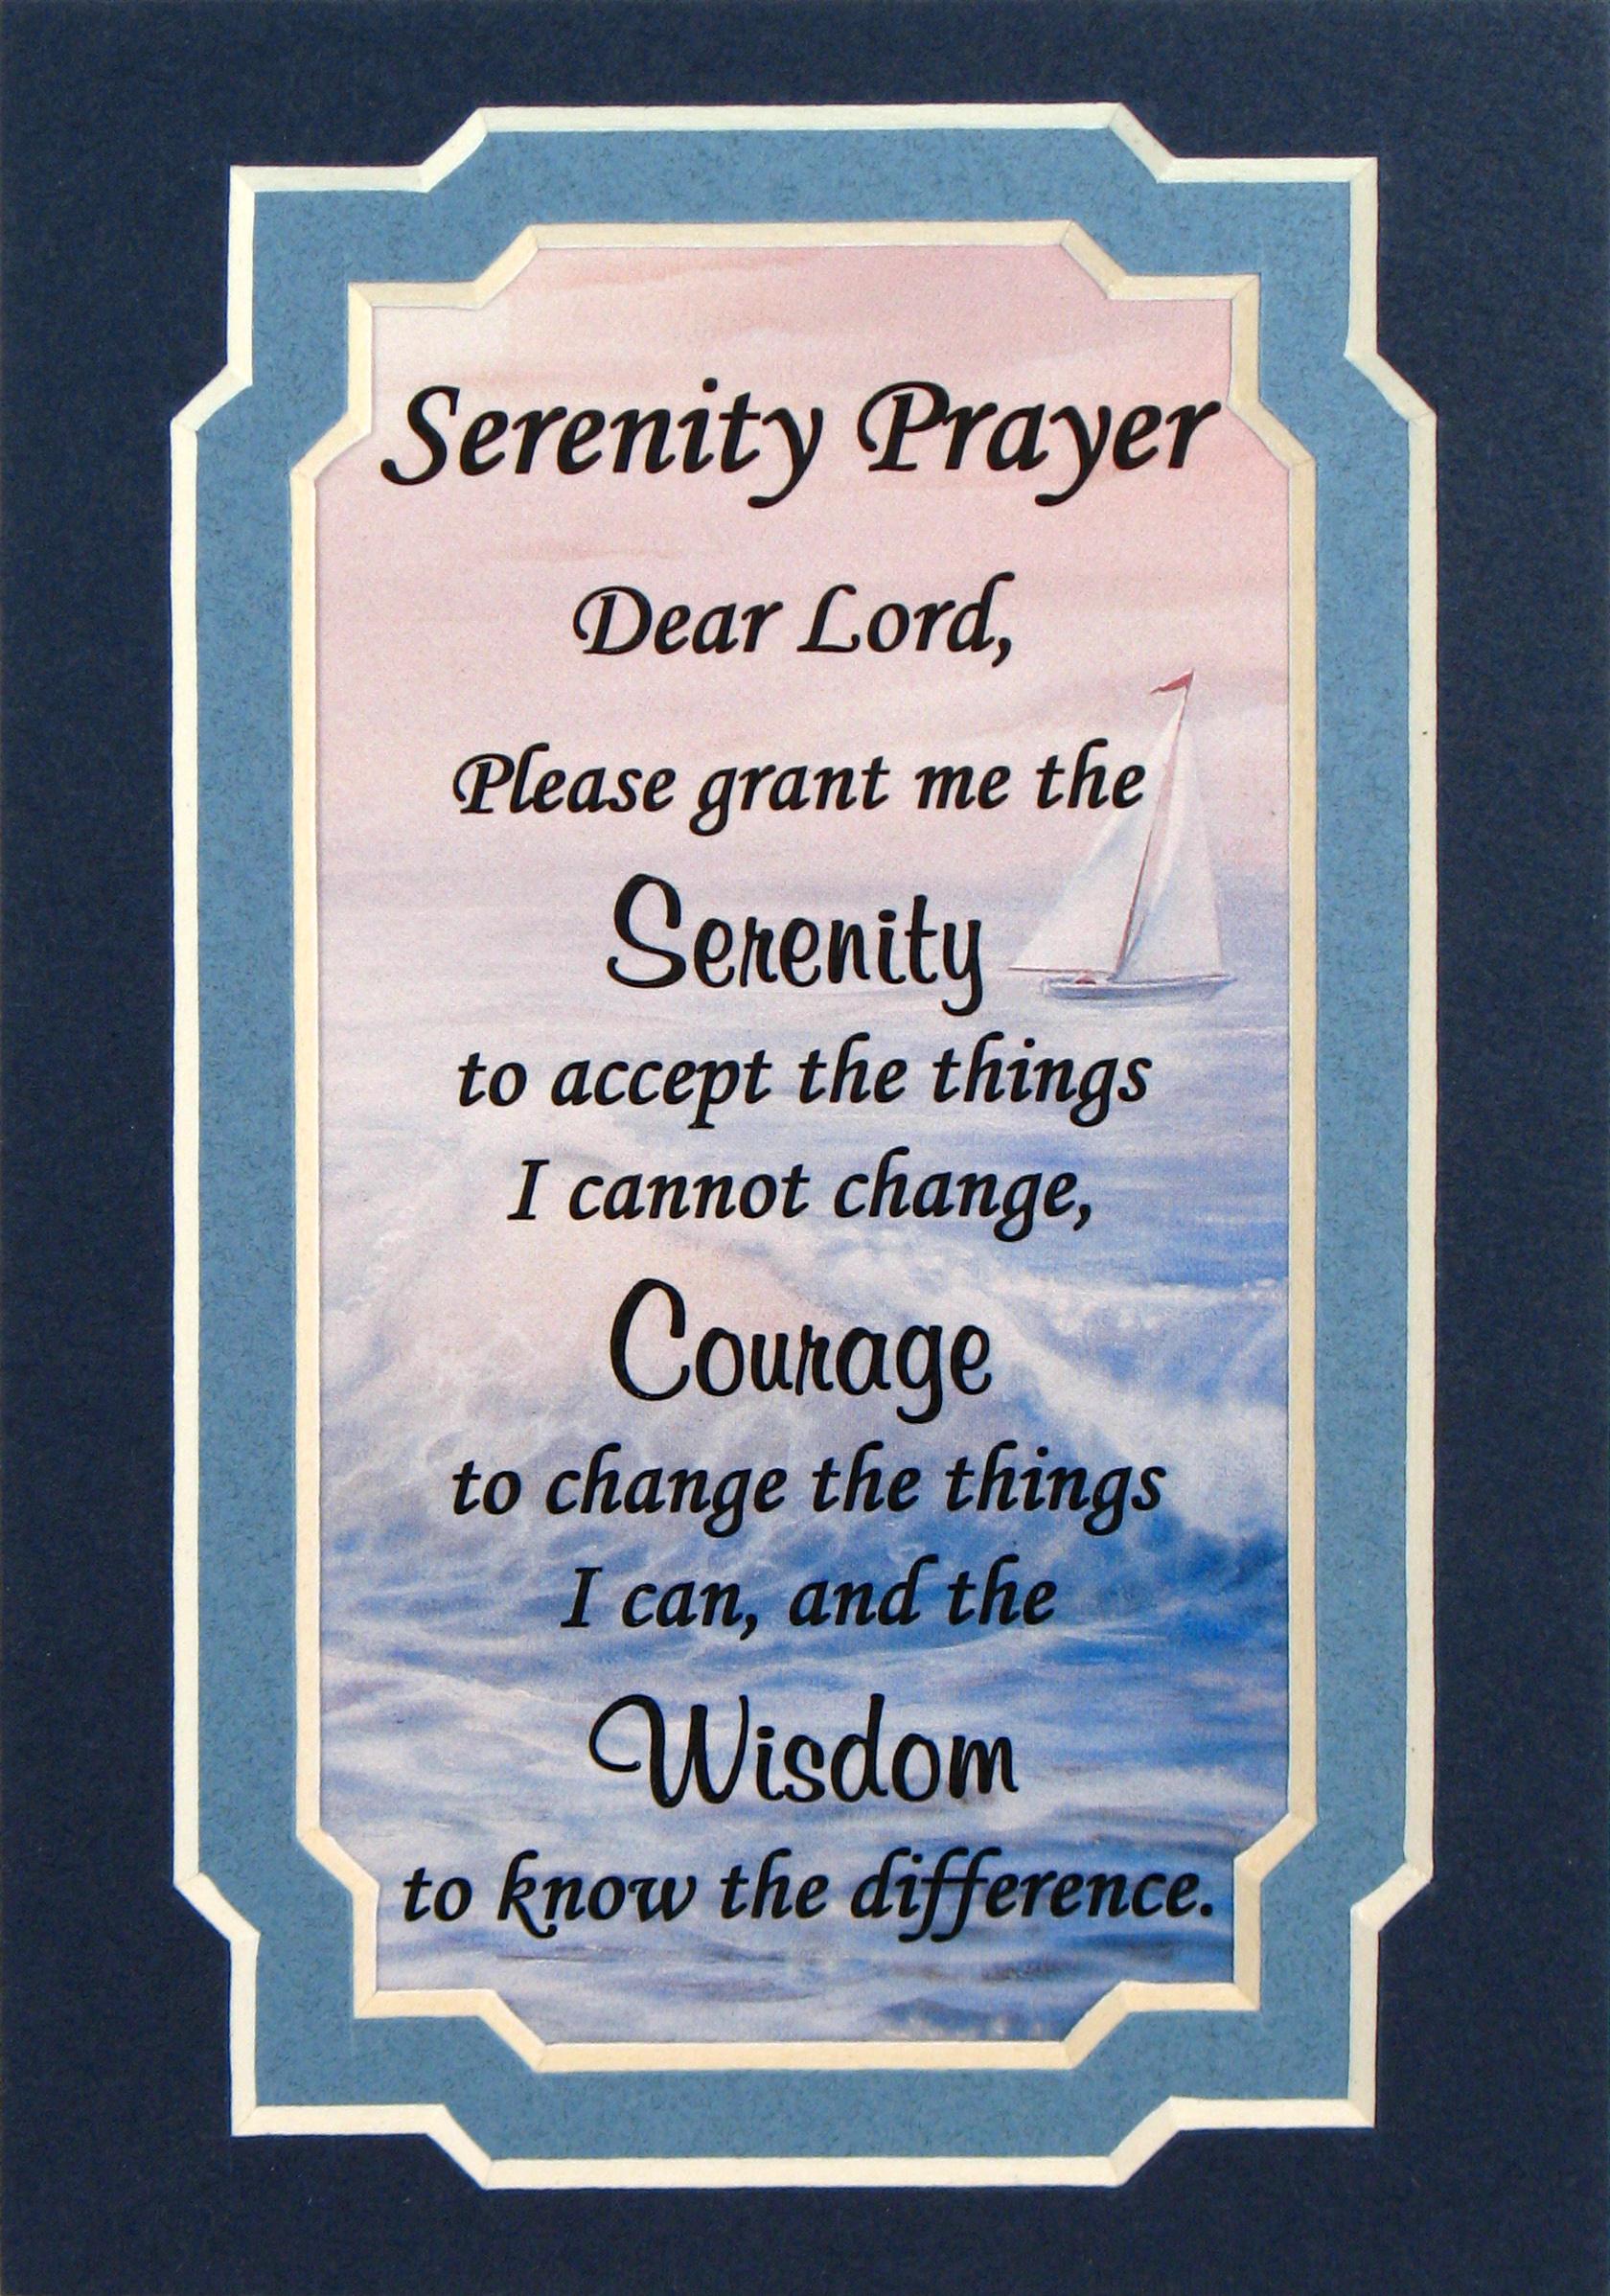 full serenity prayer text